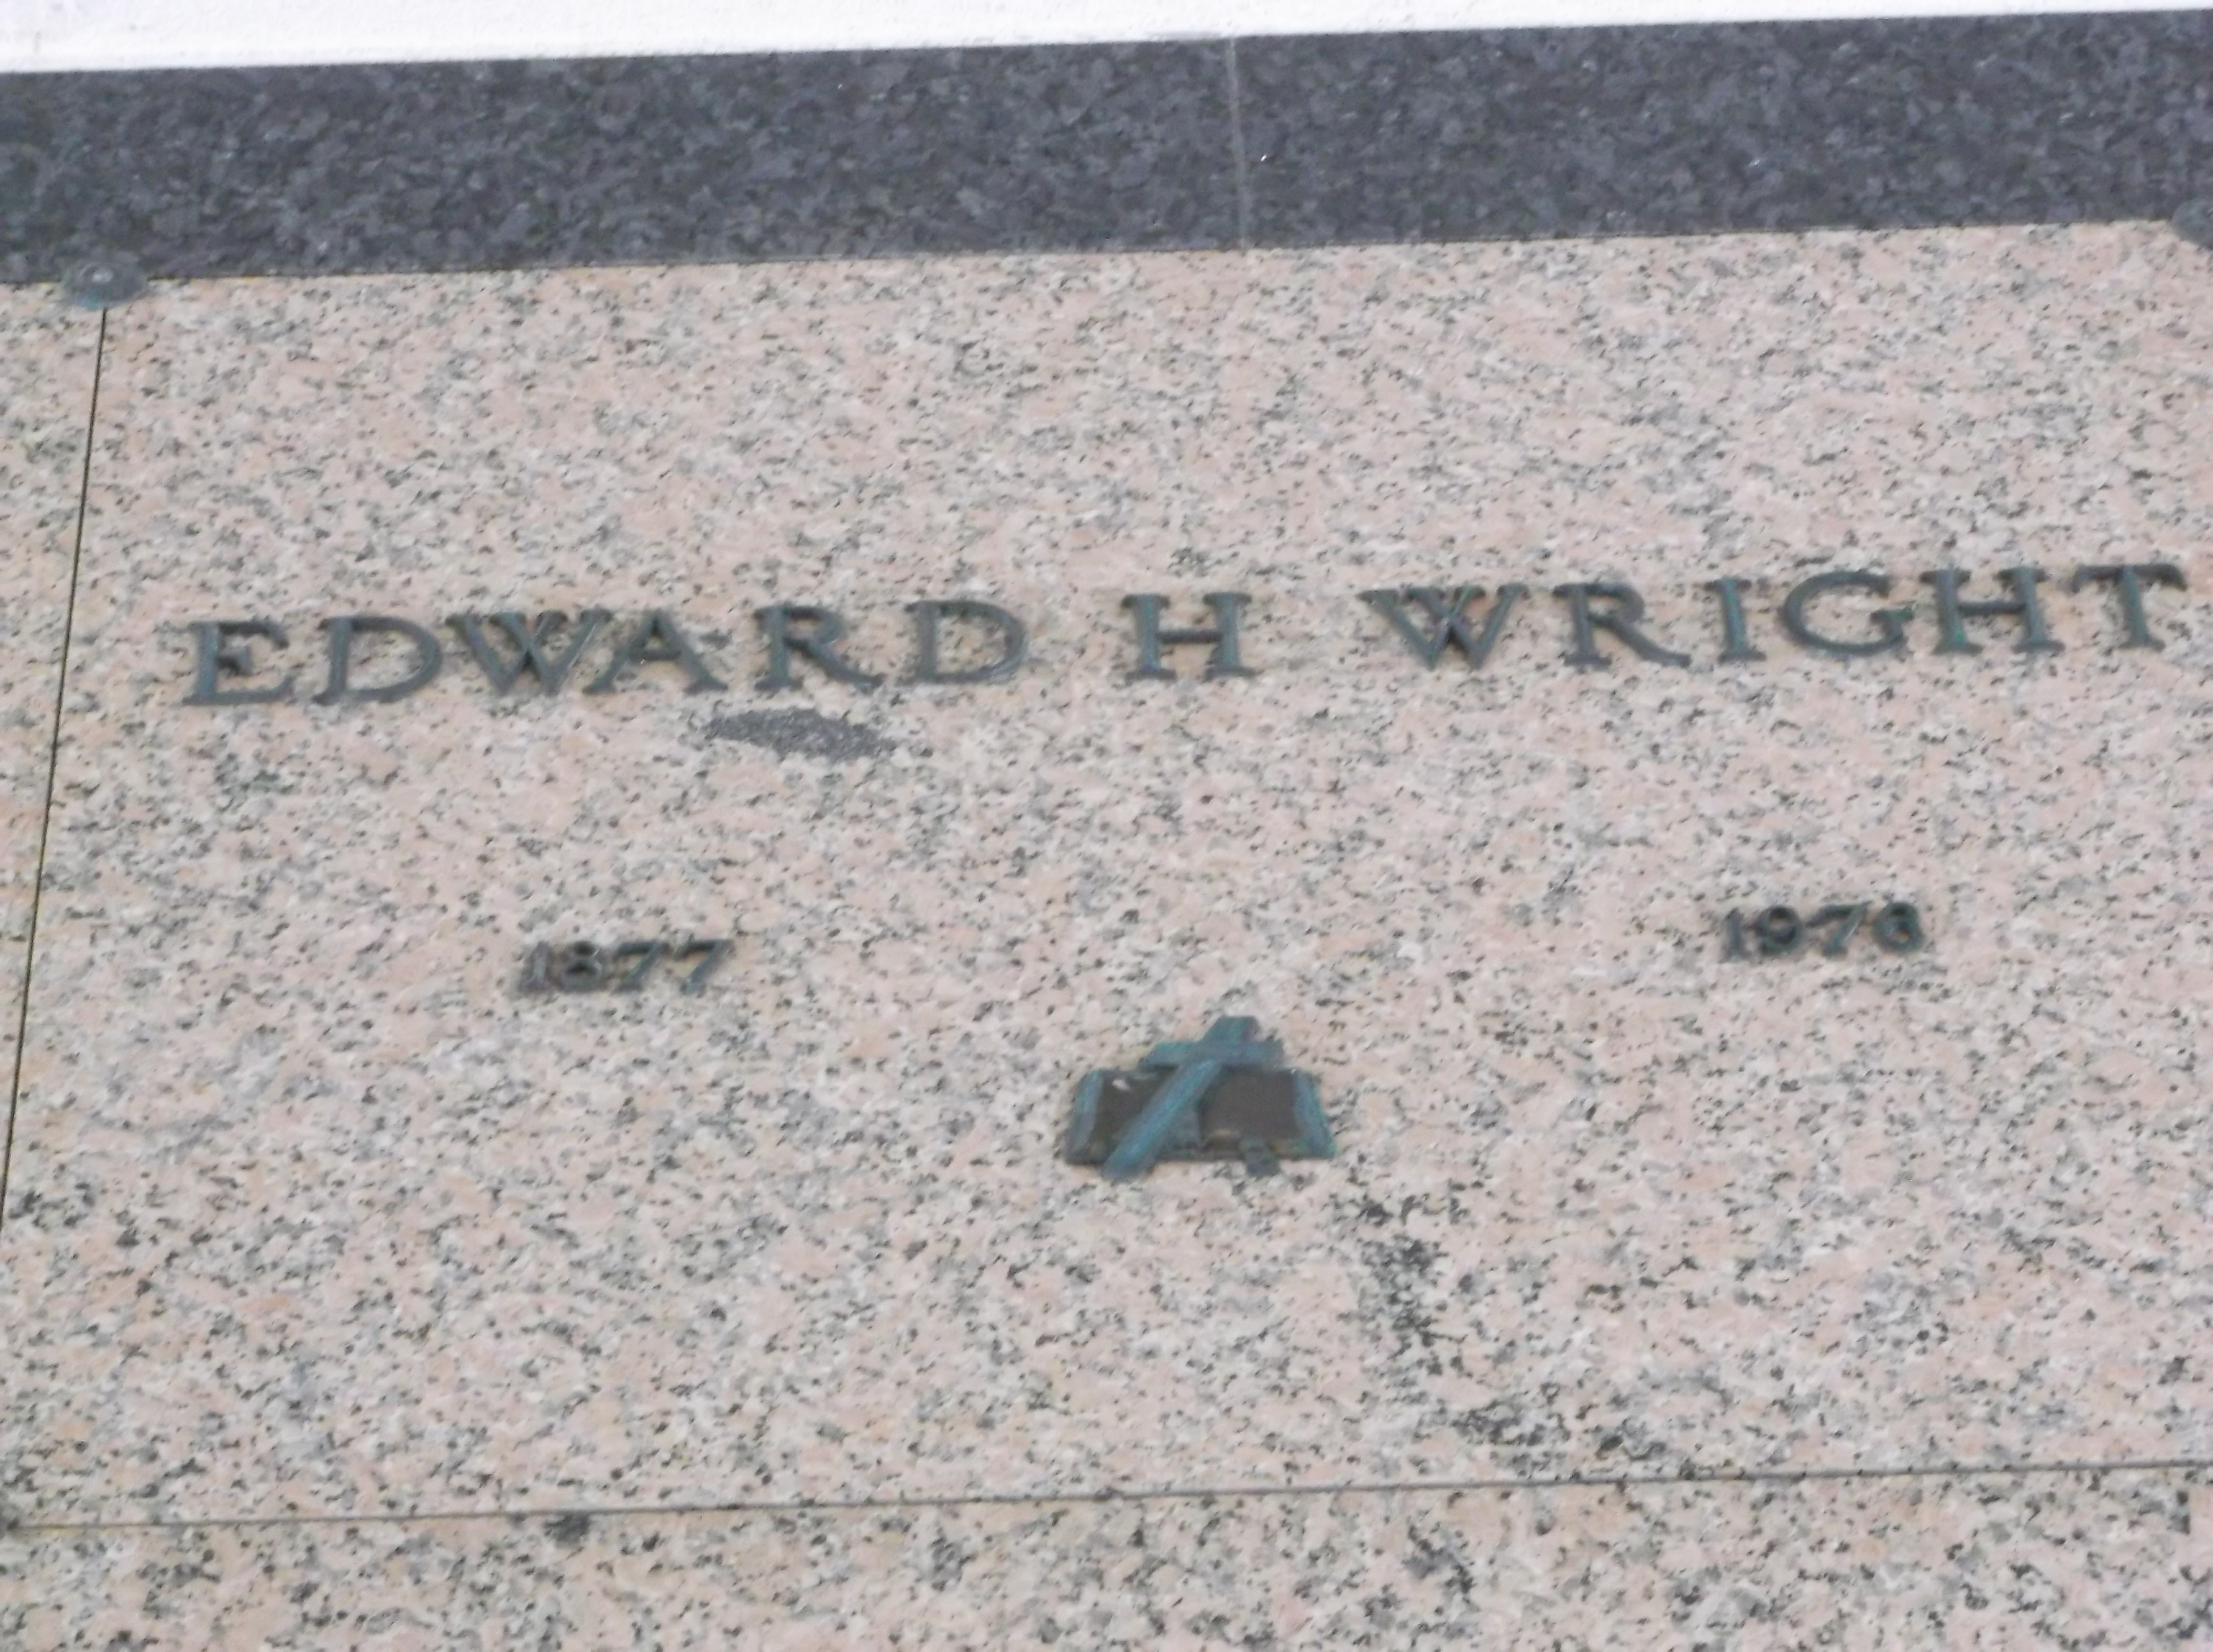 Edward H Wright